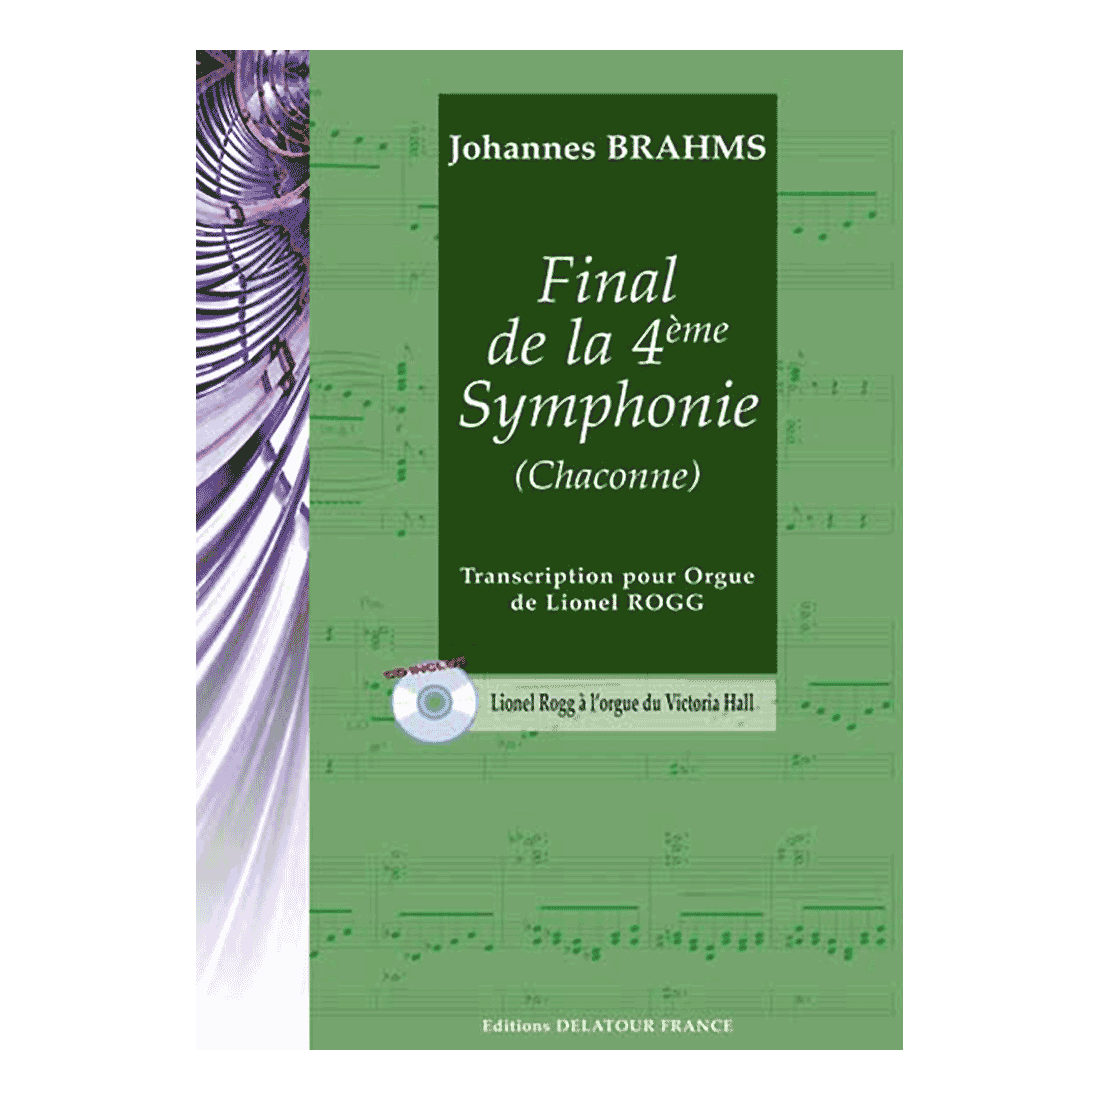 Final de la 4ème symphonie (Chaconne) pour orgue